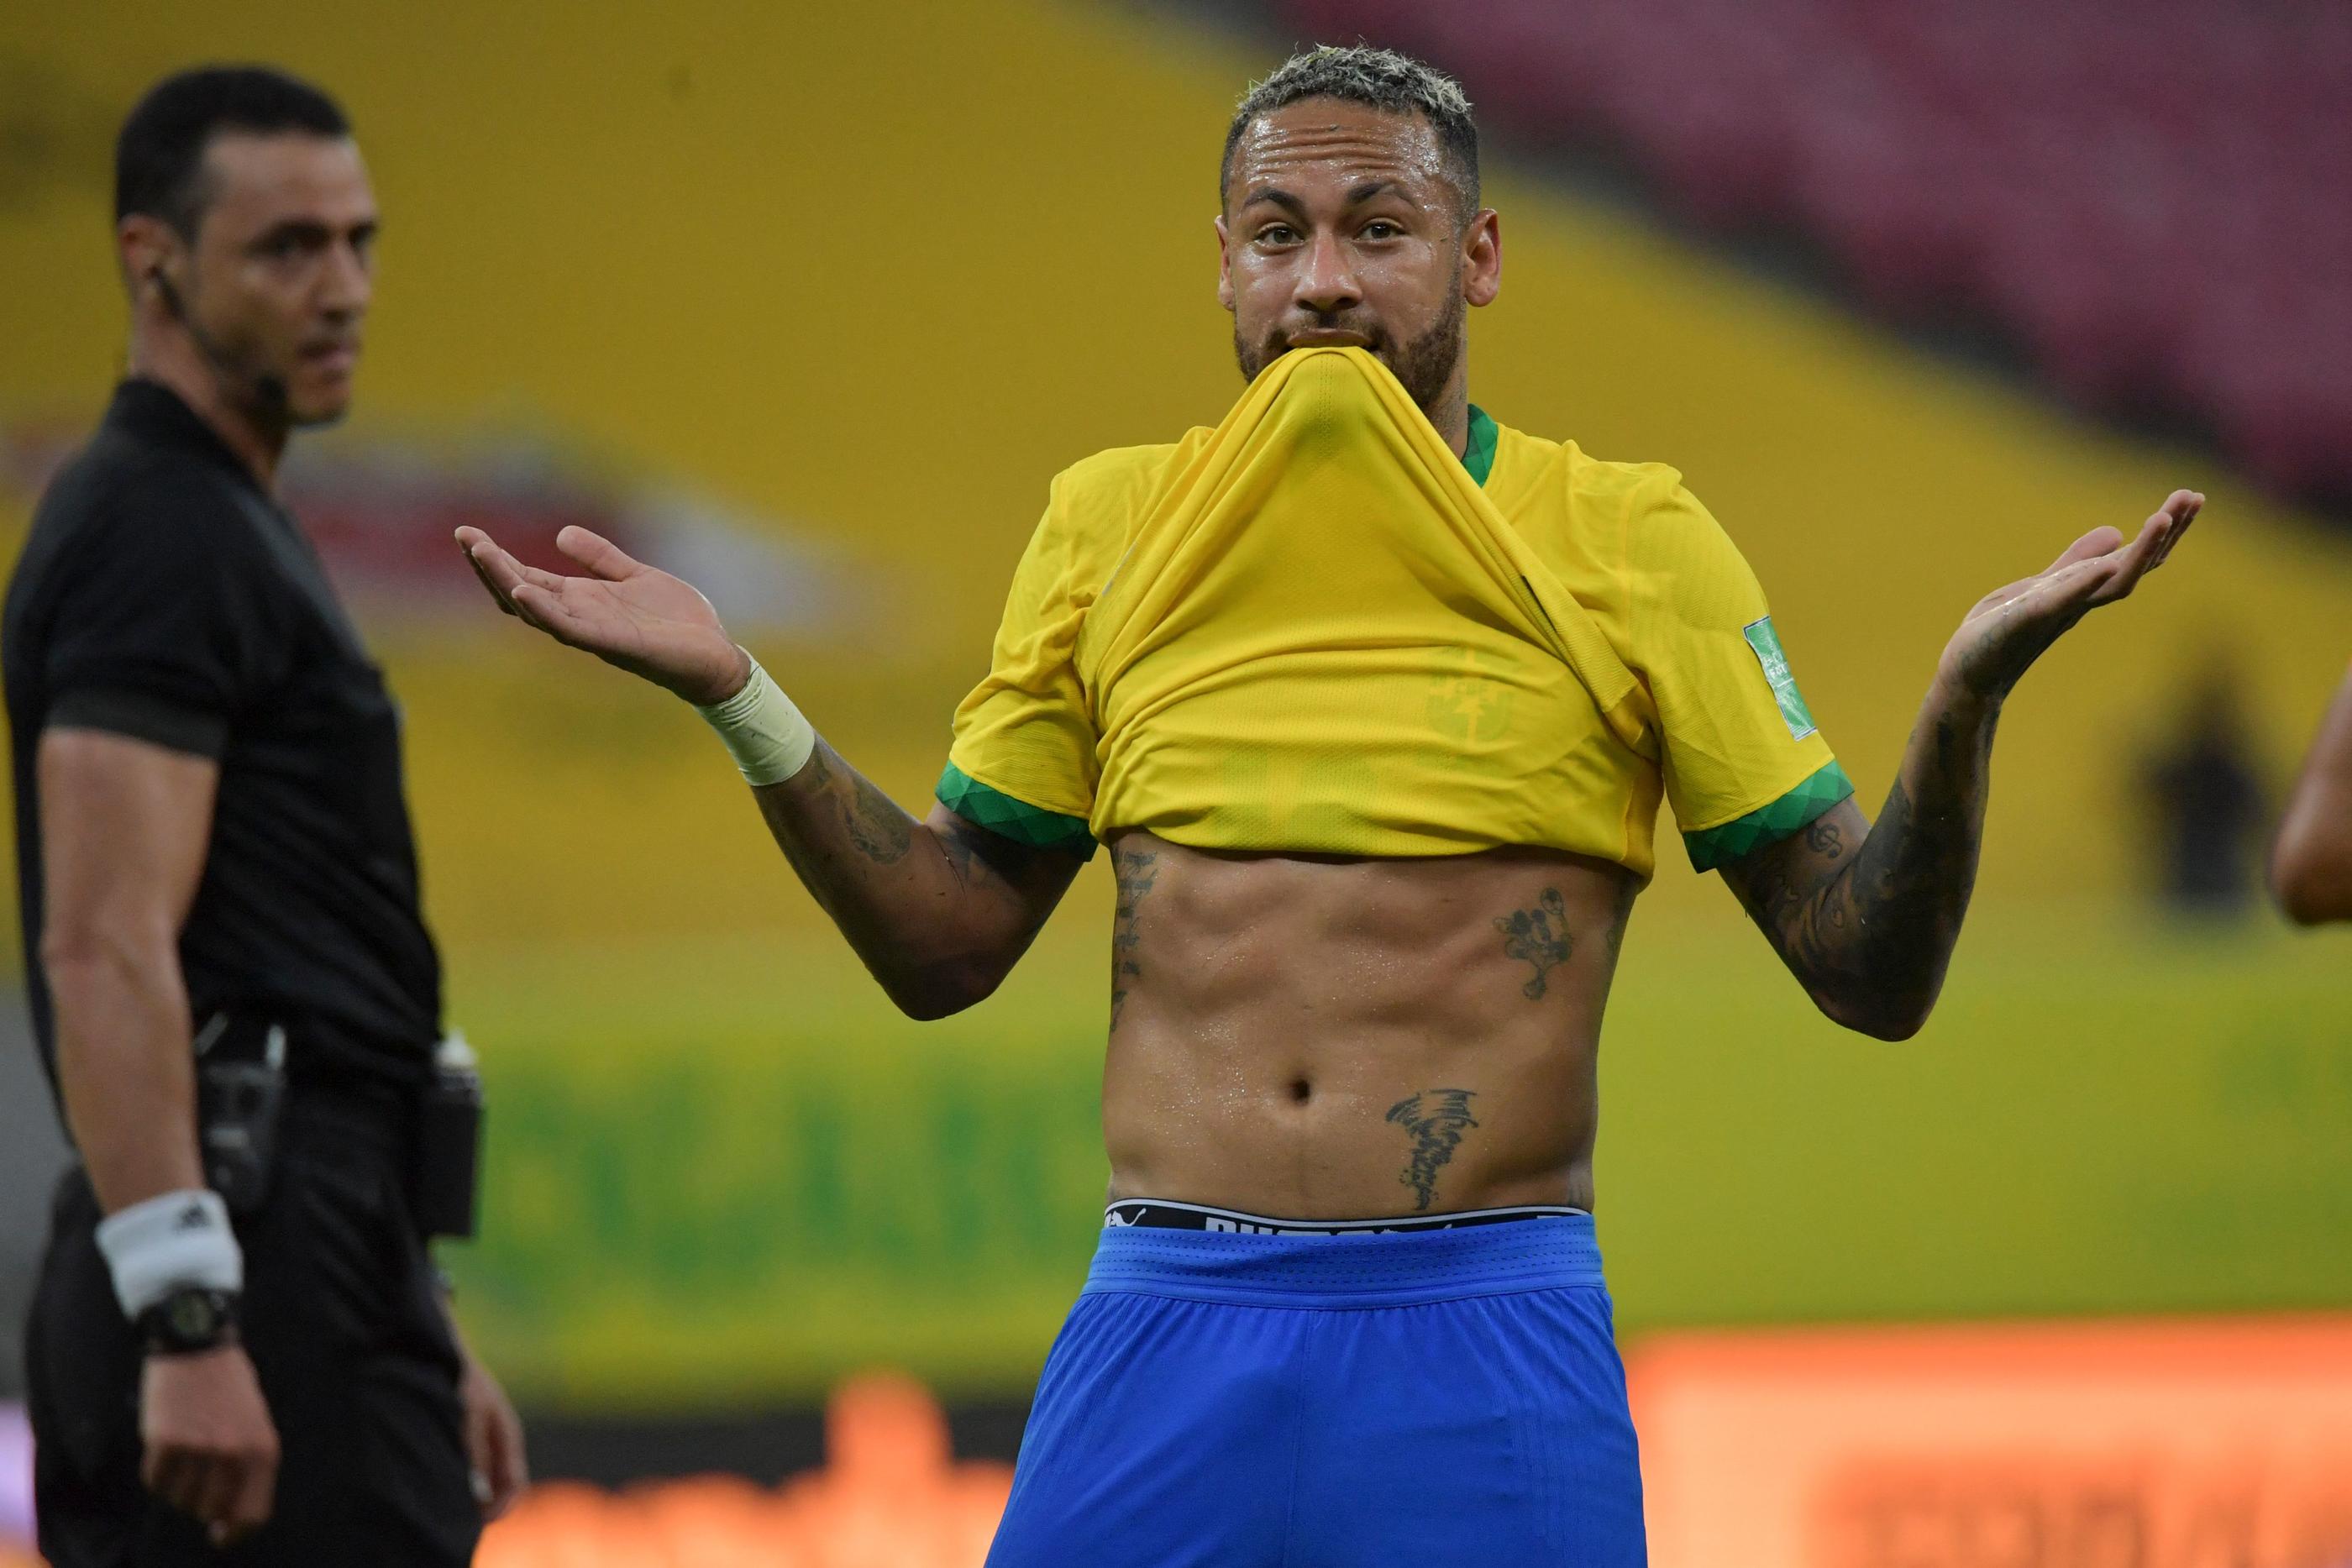 maillot brésil neymar